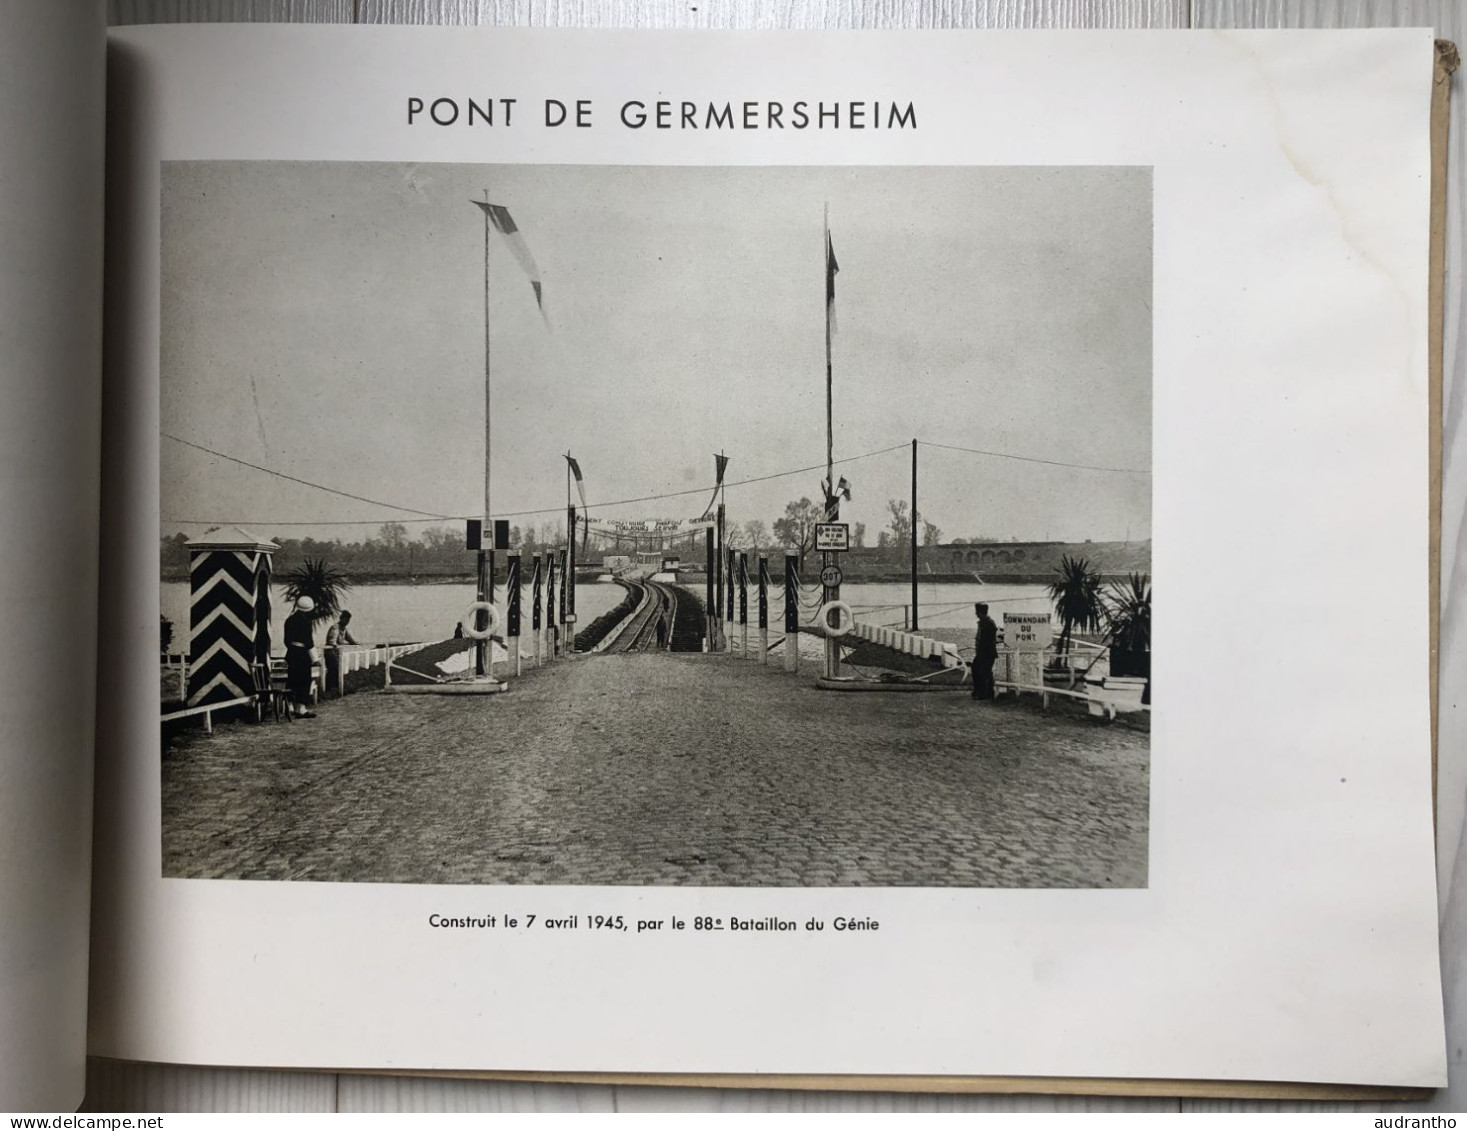 WW2 livre Le RHIN avril 1945 - Génie 1er armée Rhin et Danube - Pont De Spire De Gaulle - Delattre de Tassigny